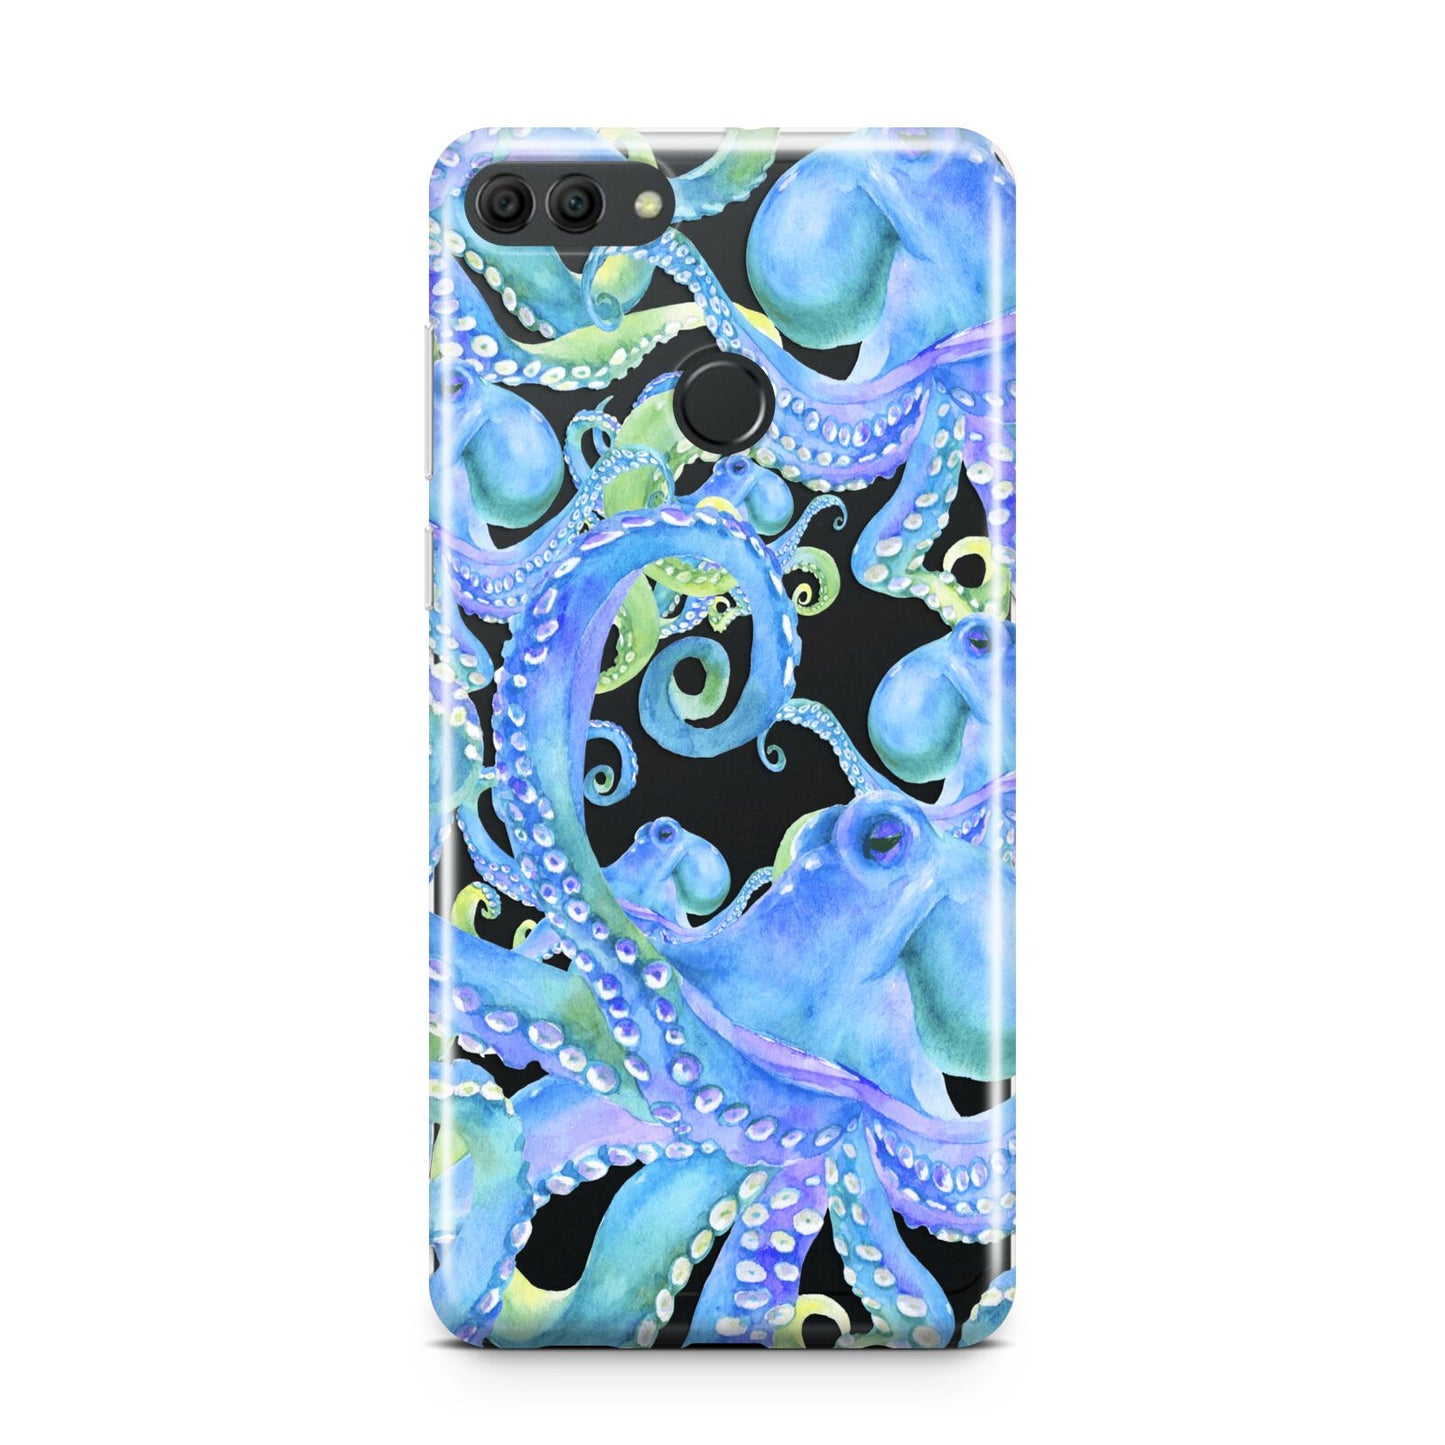 Octopus Huawei Y9 2018